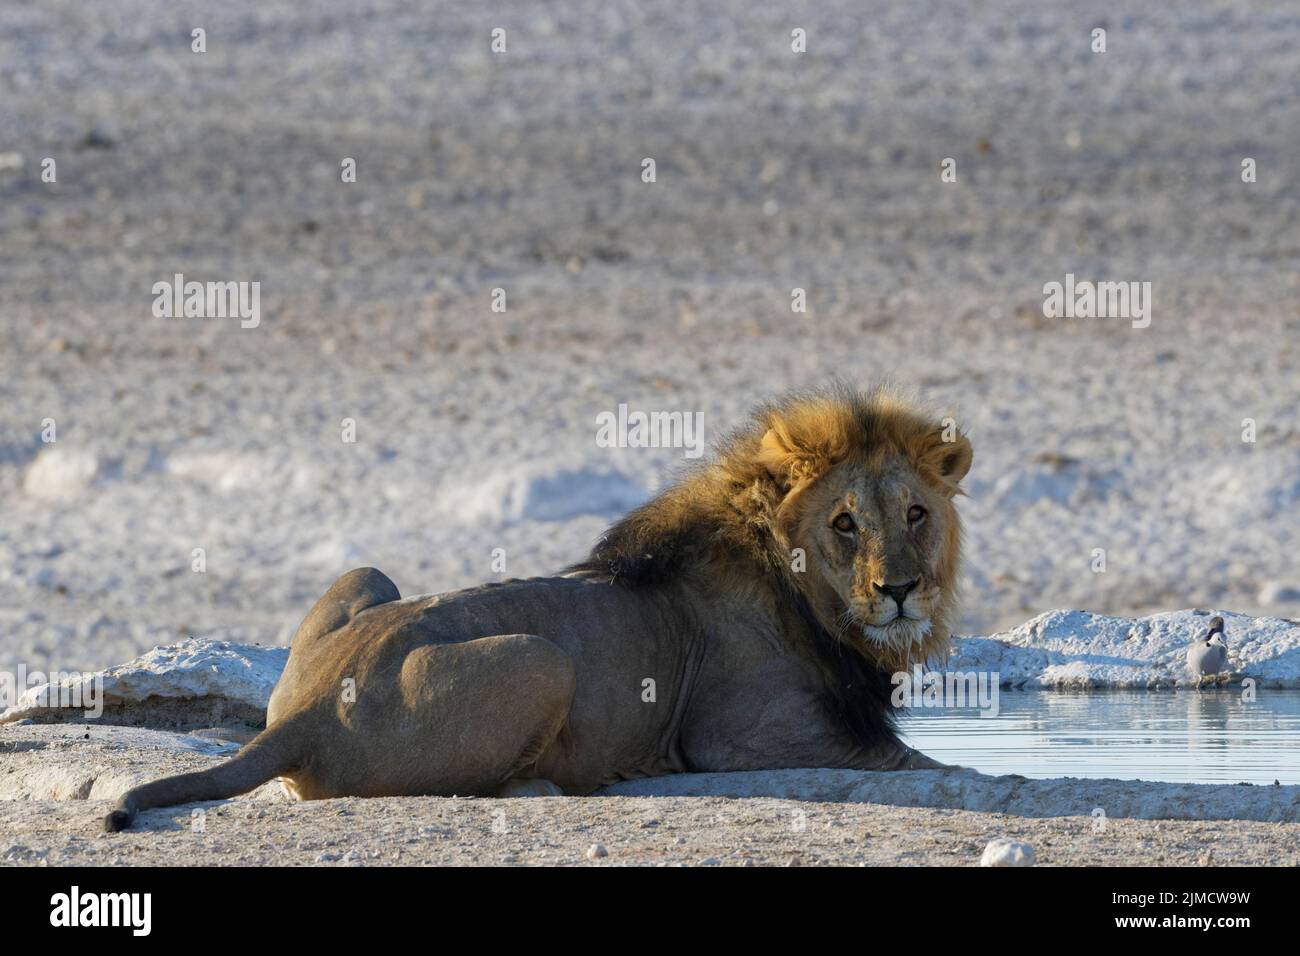 Afrikanischer Löwe (Panthera leo), liegend erwachsener Mann, trinkt am Wasserloch, Alarm, Etosha-Nationalpark, Namibia, Afrika Stockfoto